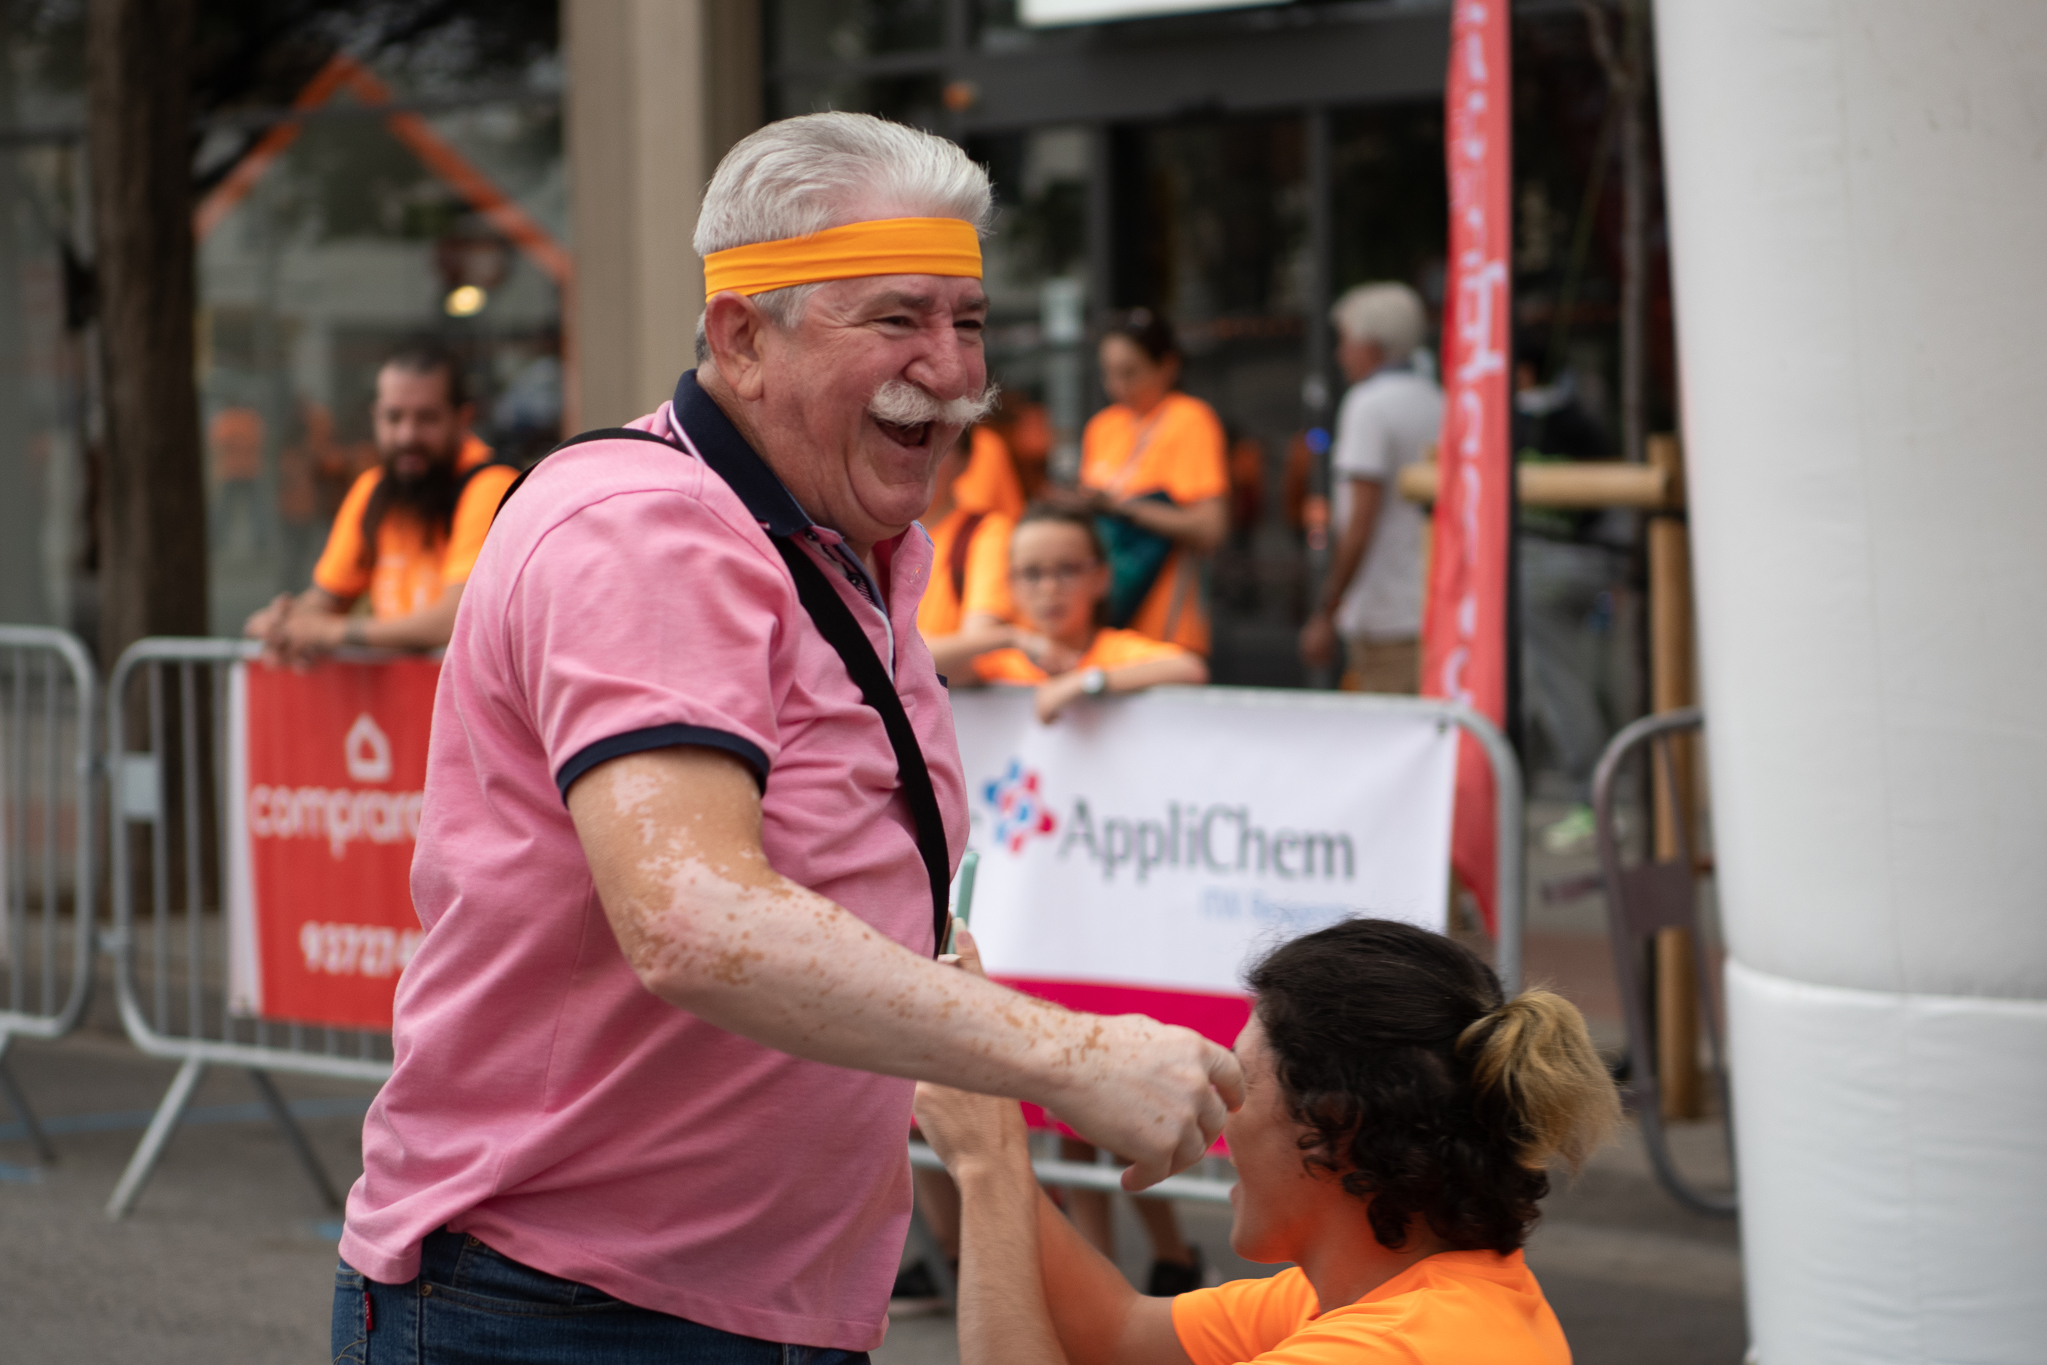 Petits i grans han participat a la "Race for Life" | Roger Benet